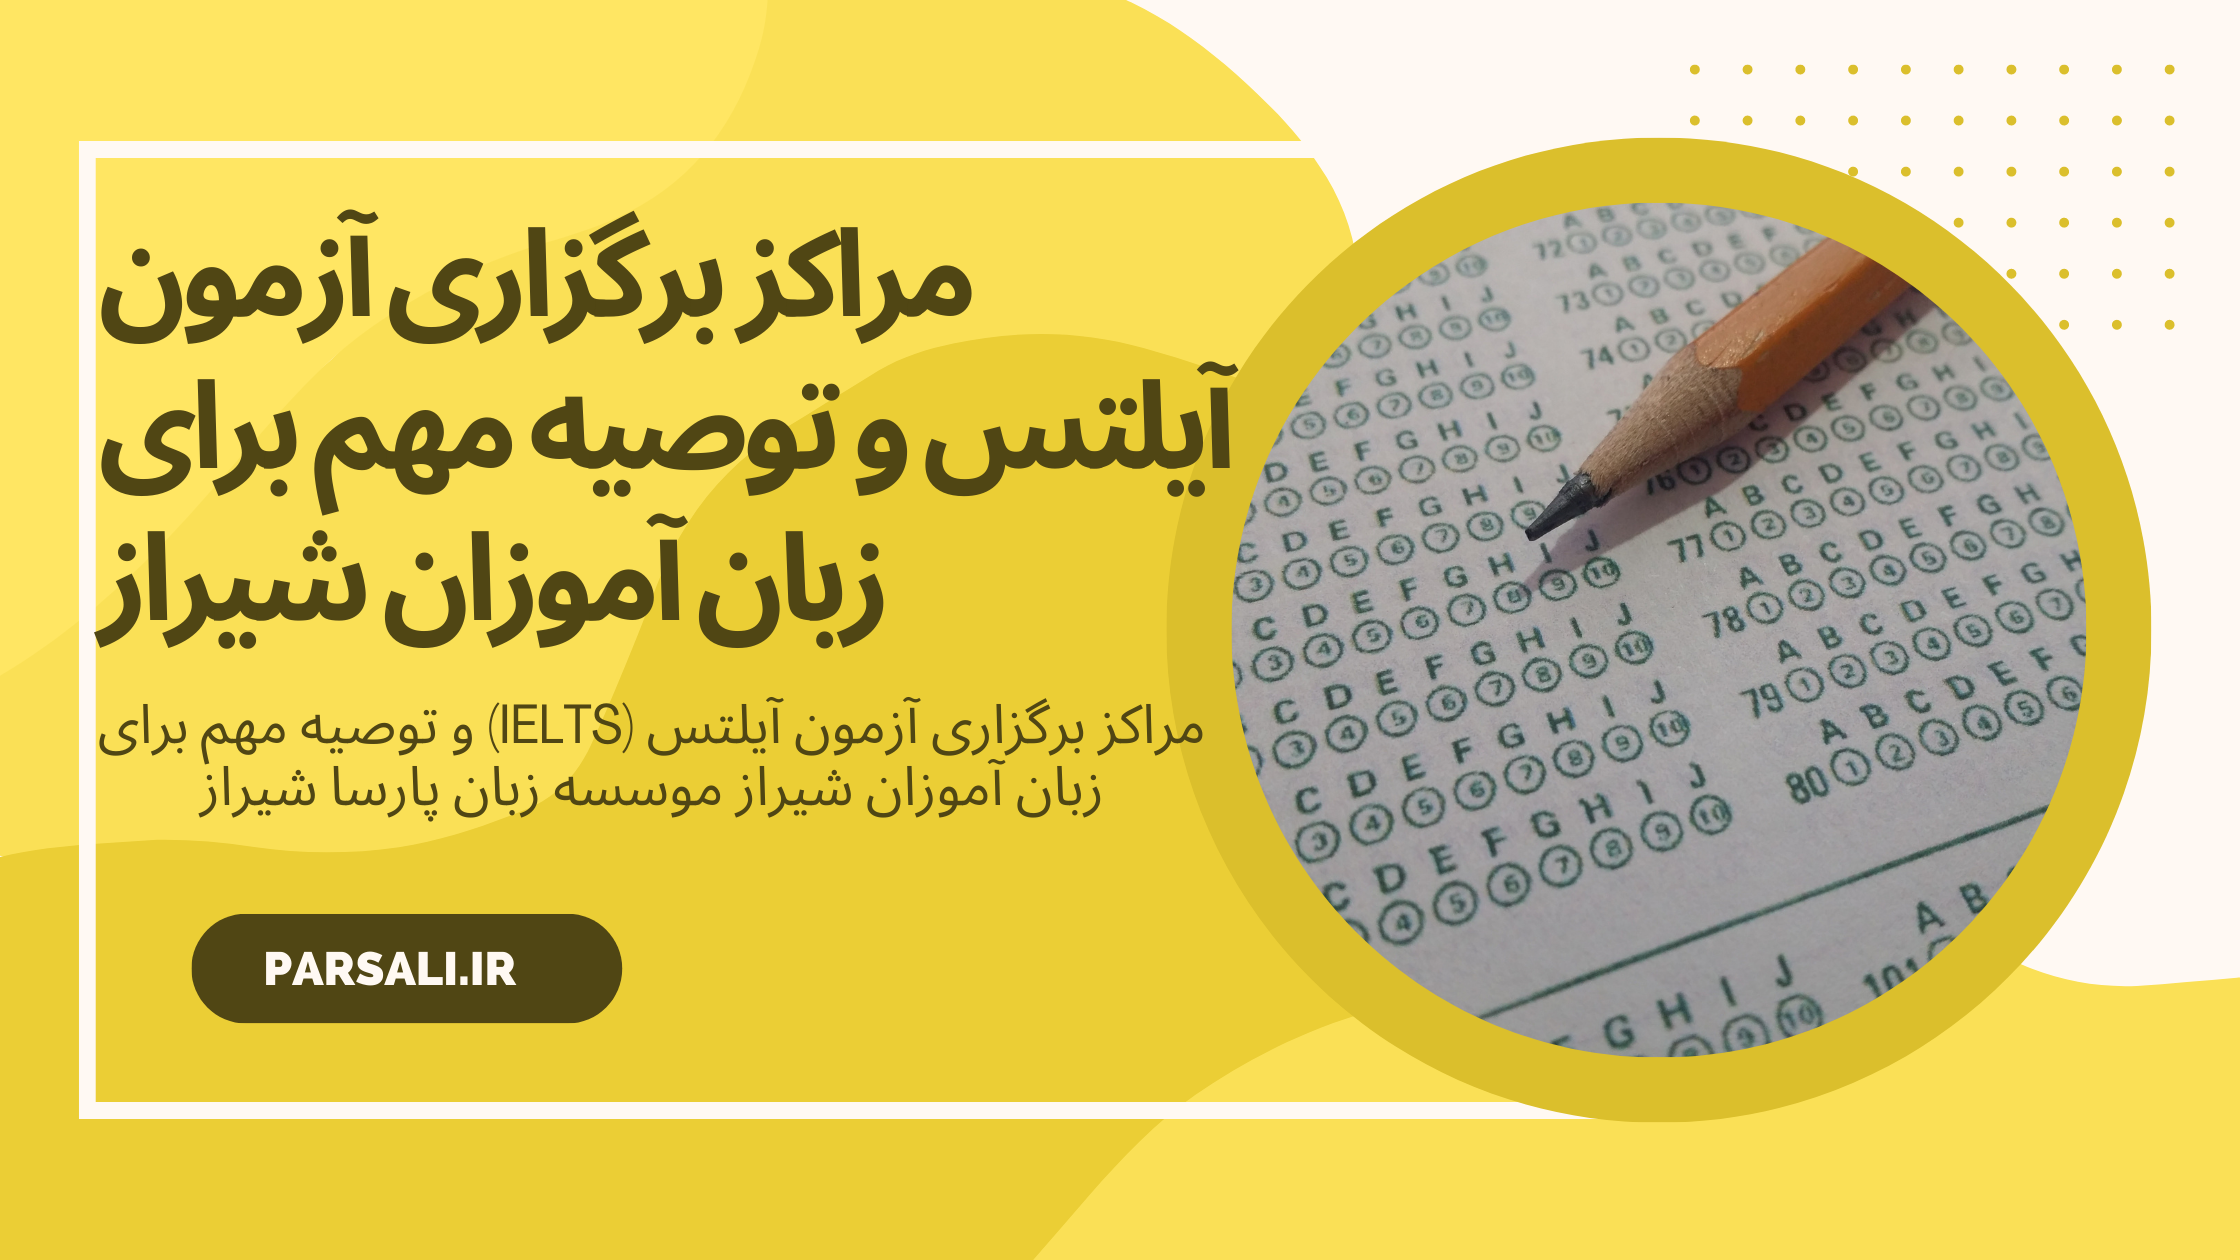 مراکز برگزاری آزمون آیلتس (IELTS) و توصیه مهم برای زبان آموزان شیراز